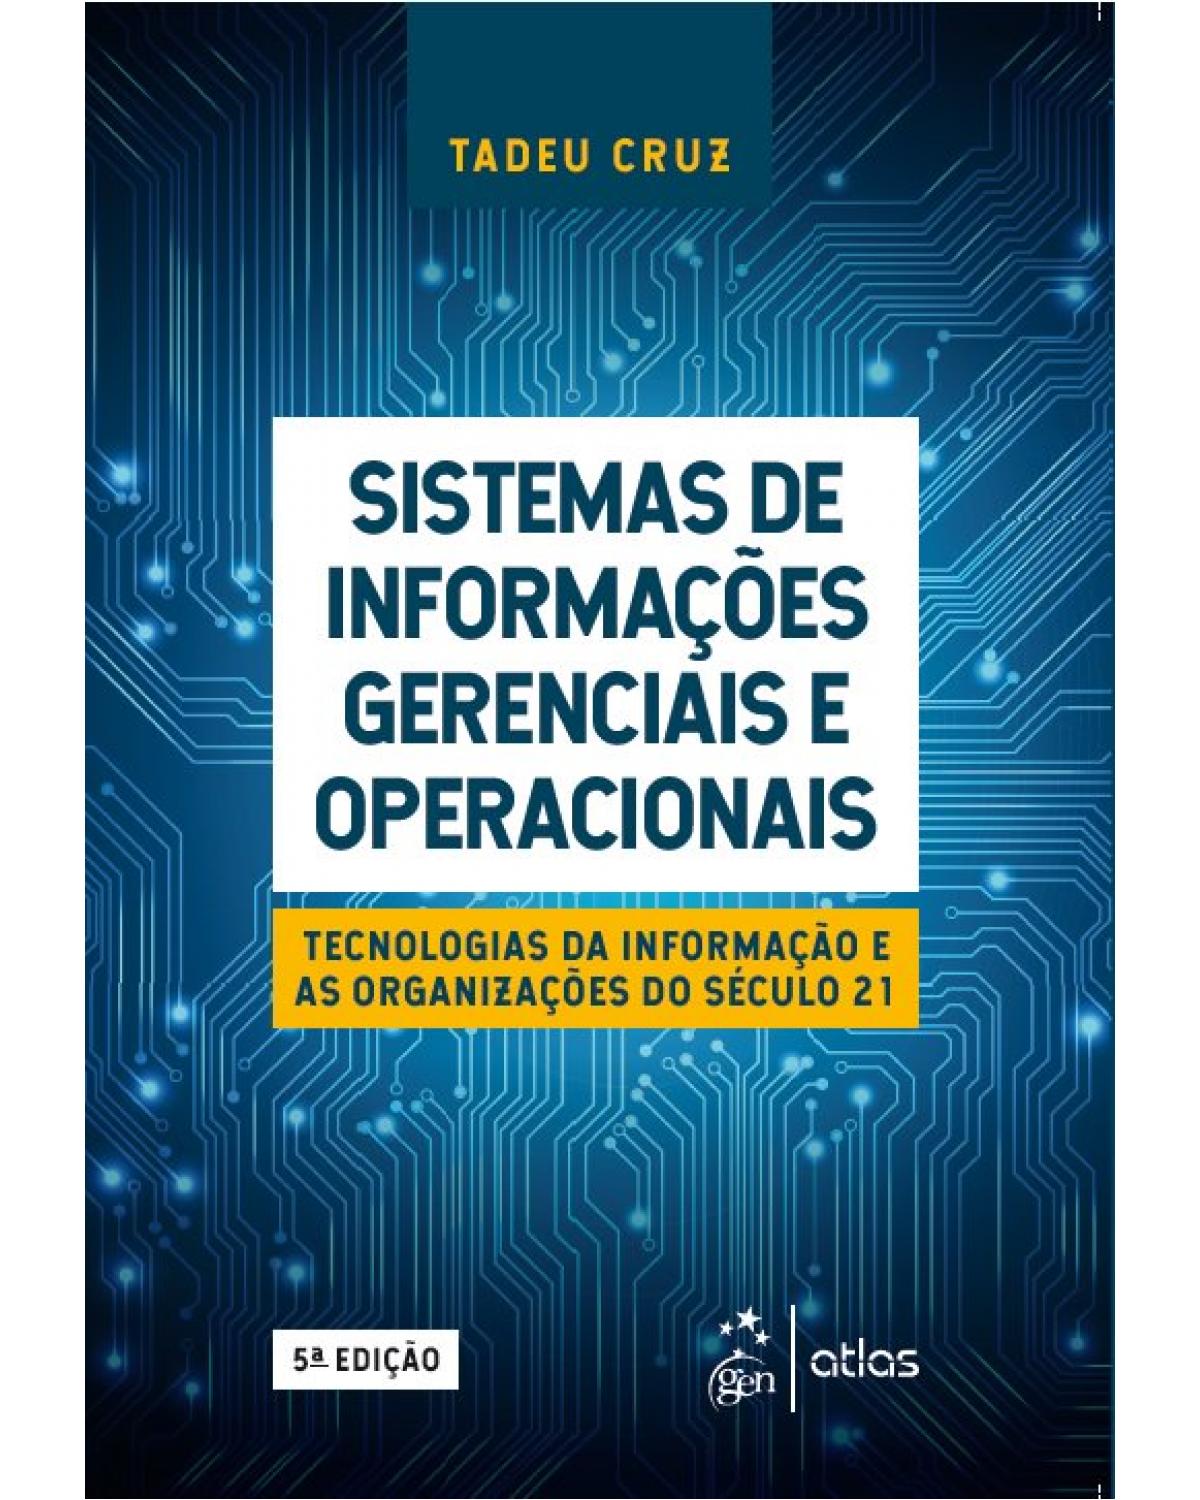 Sistemas de informações gerenciais e operacionais - tecnologias da informação e as organizações do século 21 - 5ª Edição | 2019